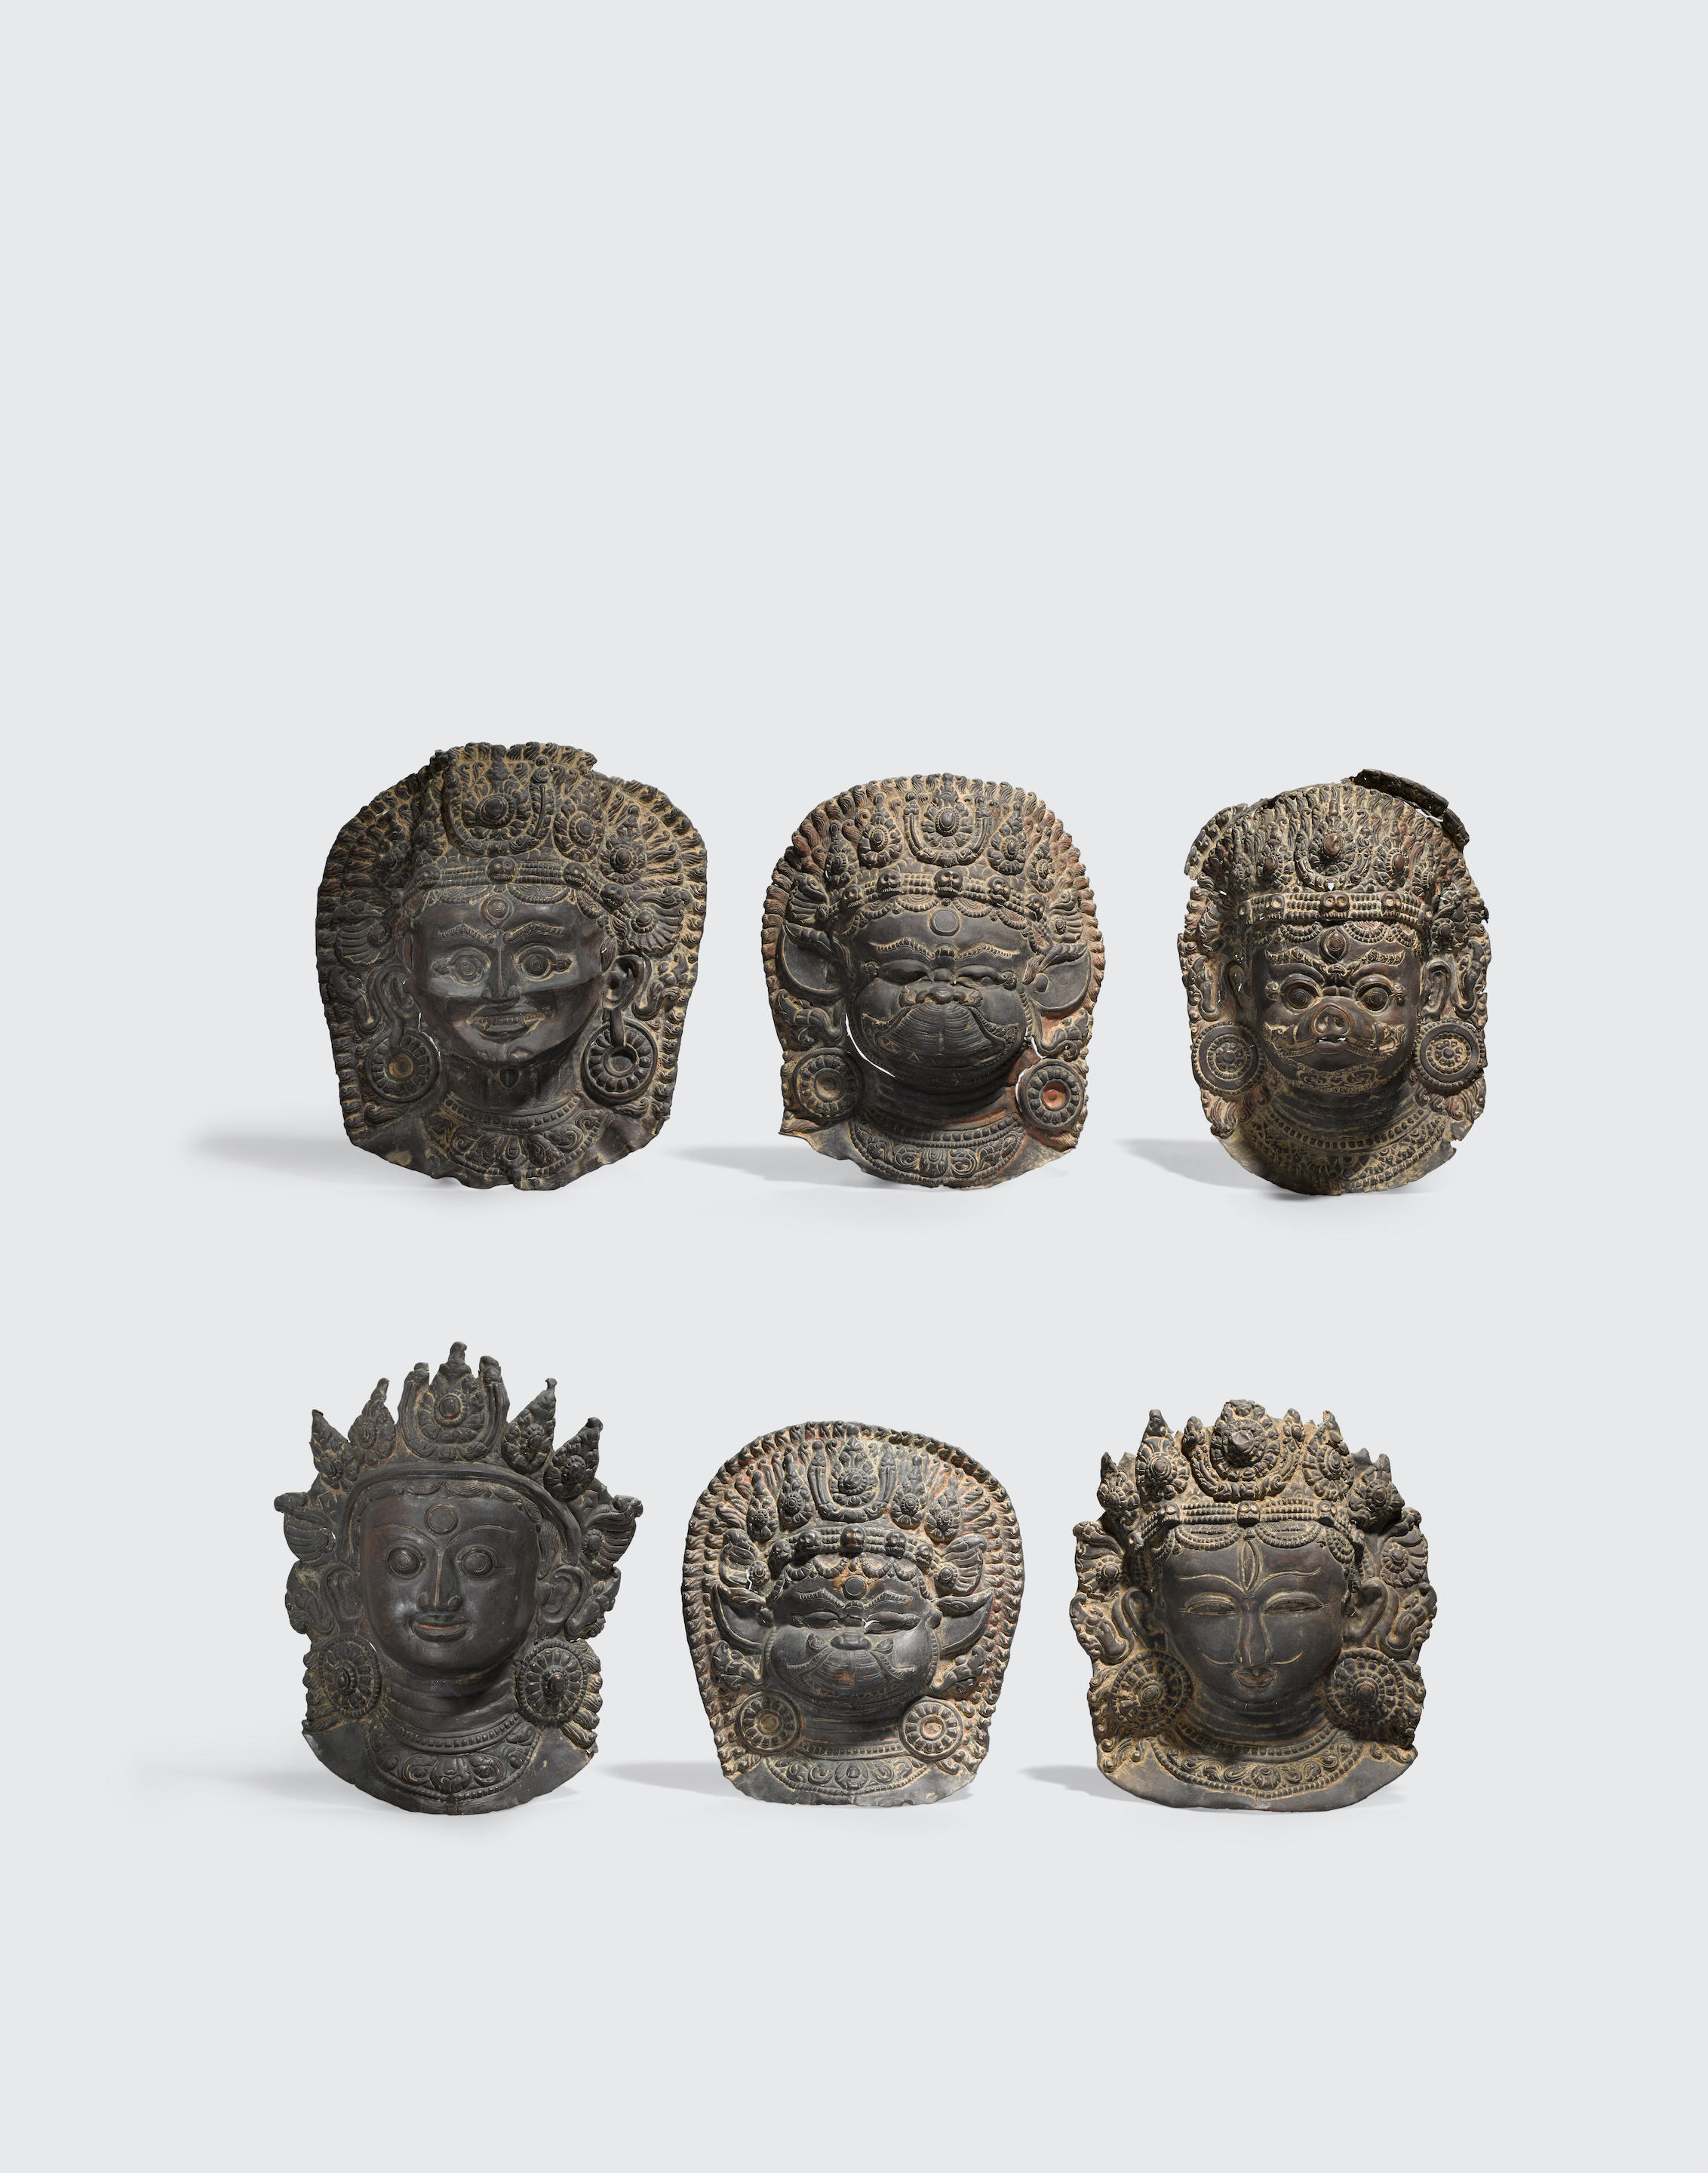 A group of six navadurga masks